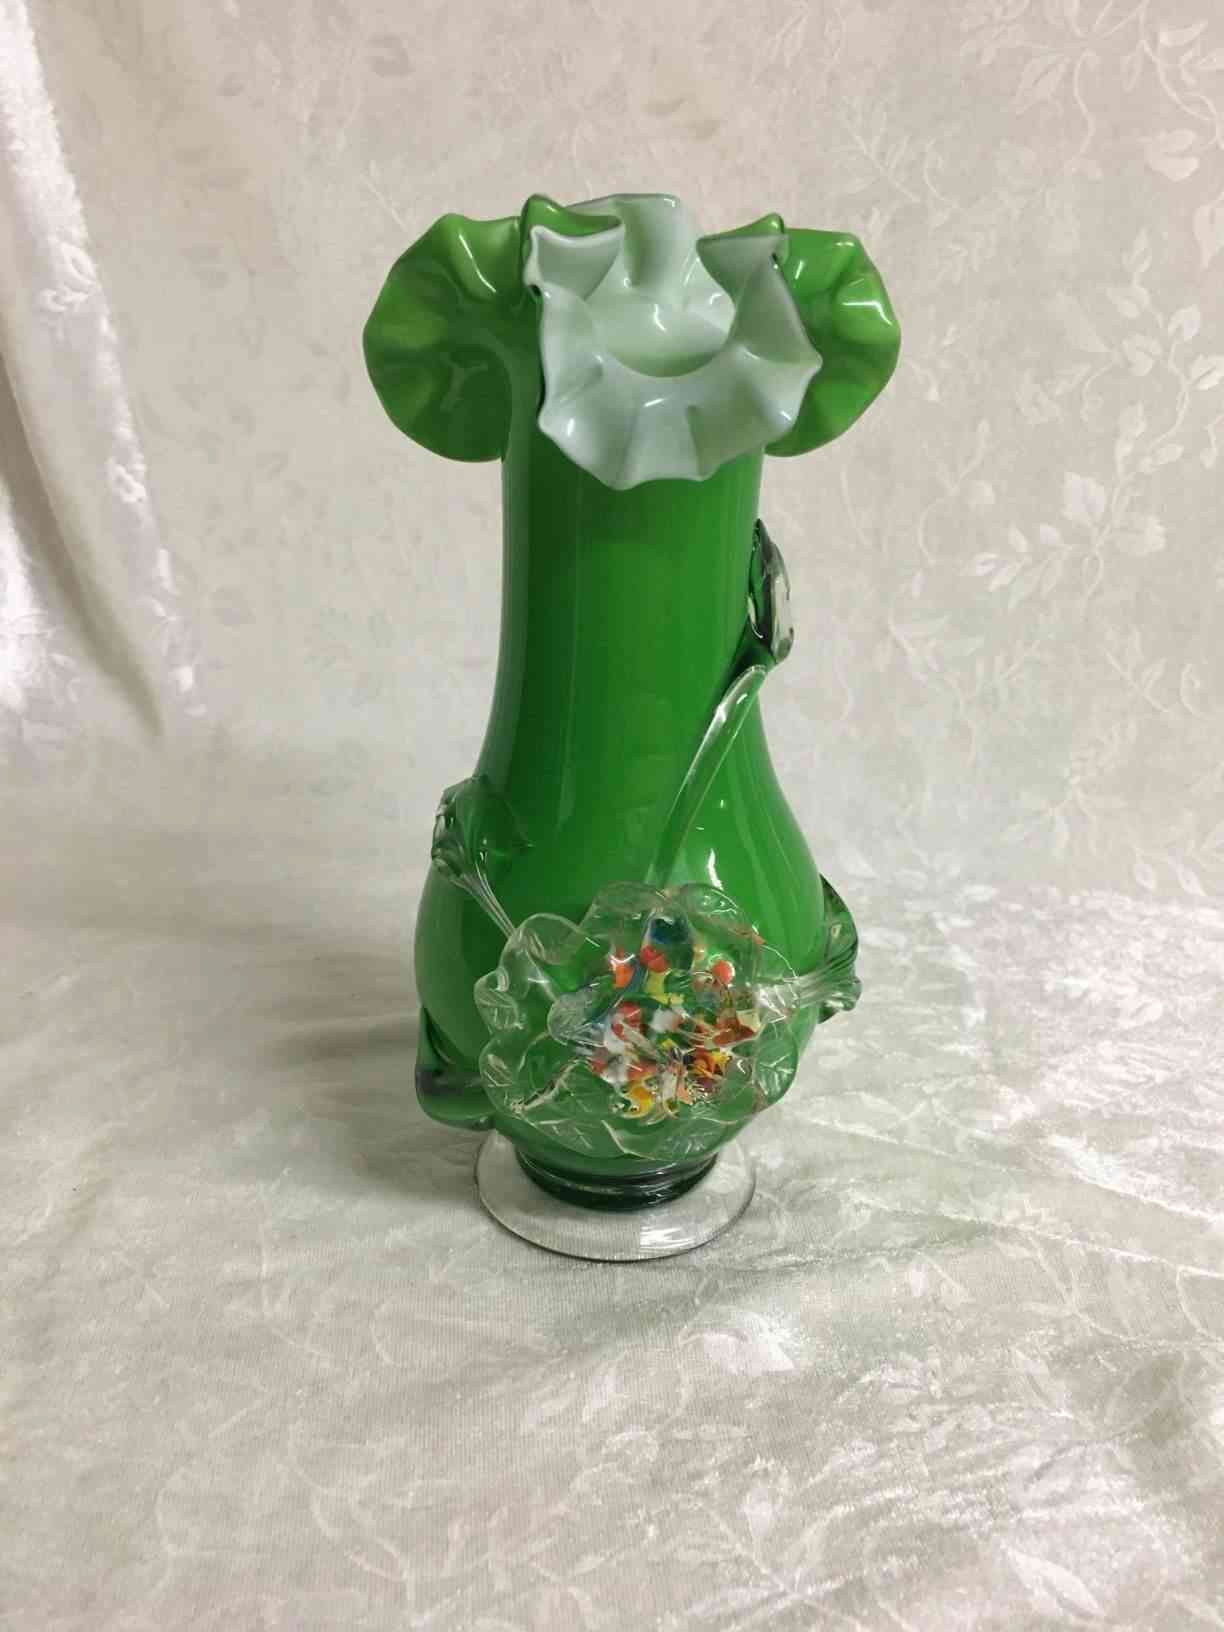 Grøn Tivoli vase - SOLGT